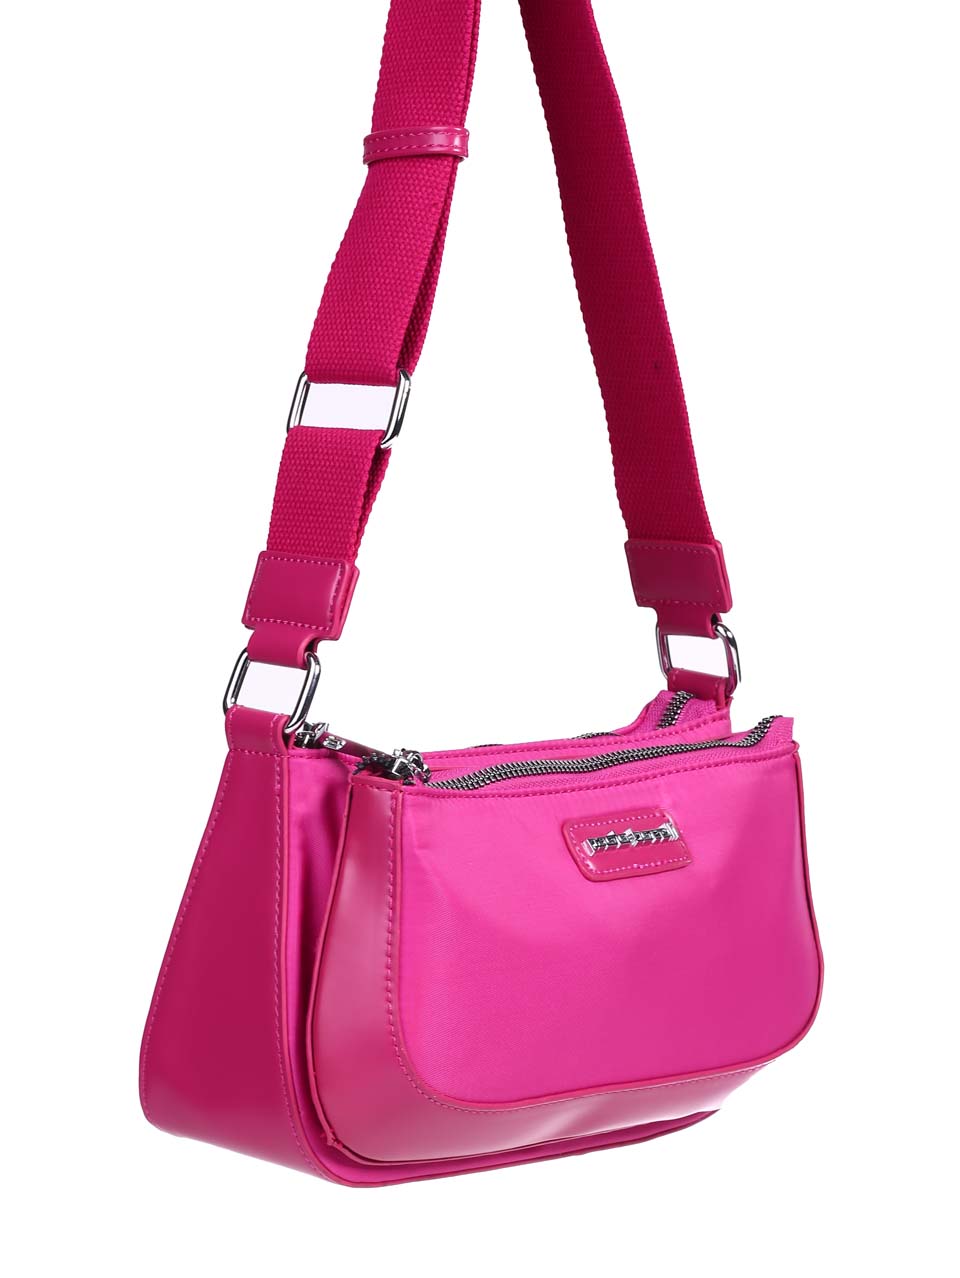 Ежедневна дамска чанта в цвят фуксия 9Q-24270 fuchsia